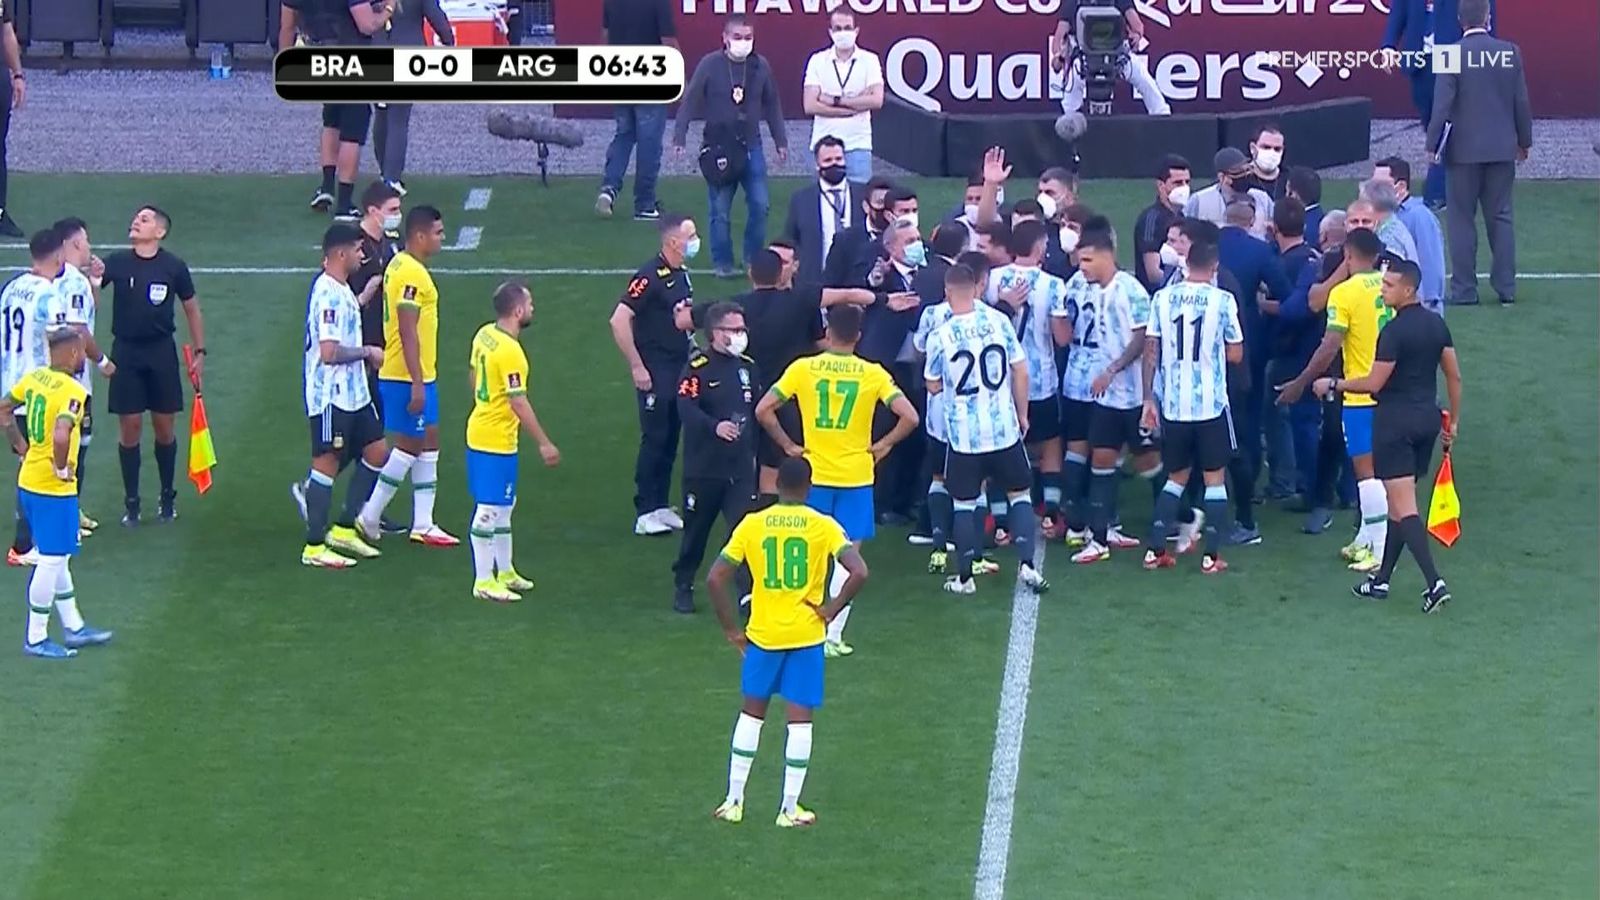 Brazil vs argentina